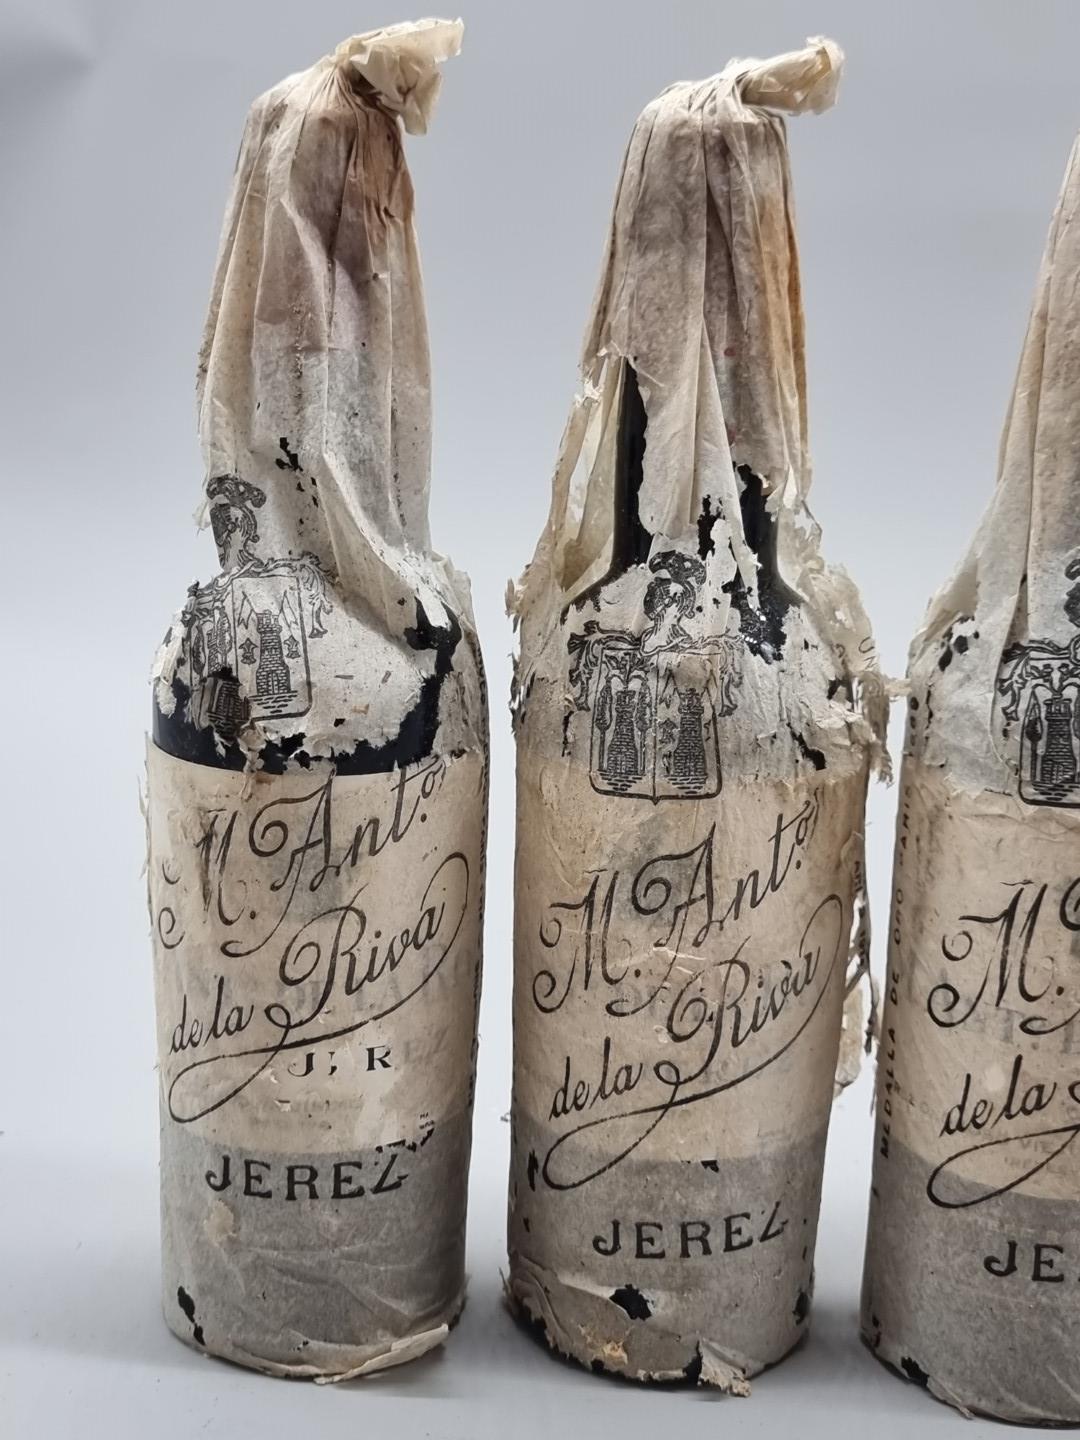 Four half bottles of Oloroso Viejisimo Sherry, Antonio de la Riva, 1940s bottling. (4) - Image 2 of 3